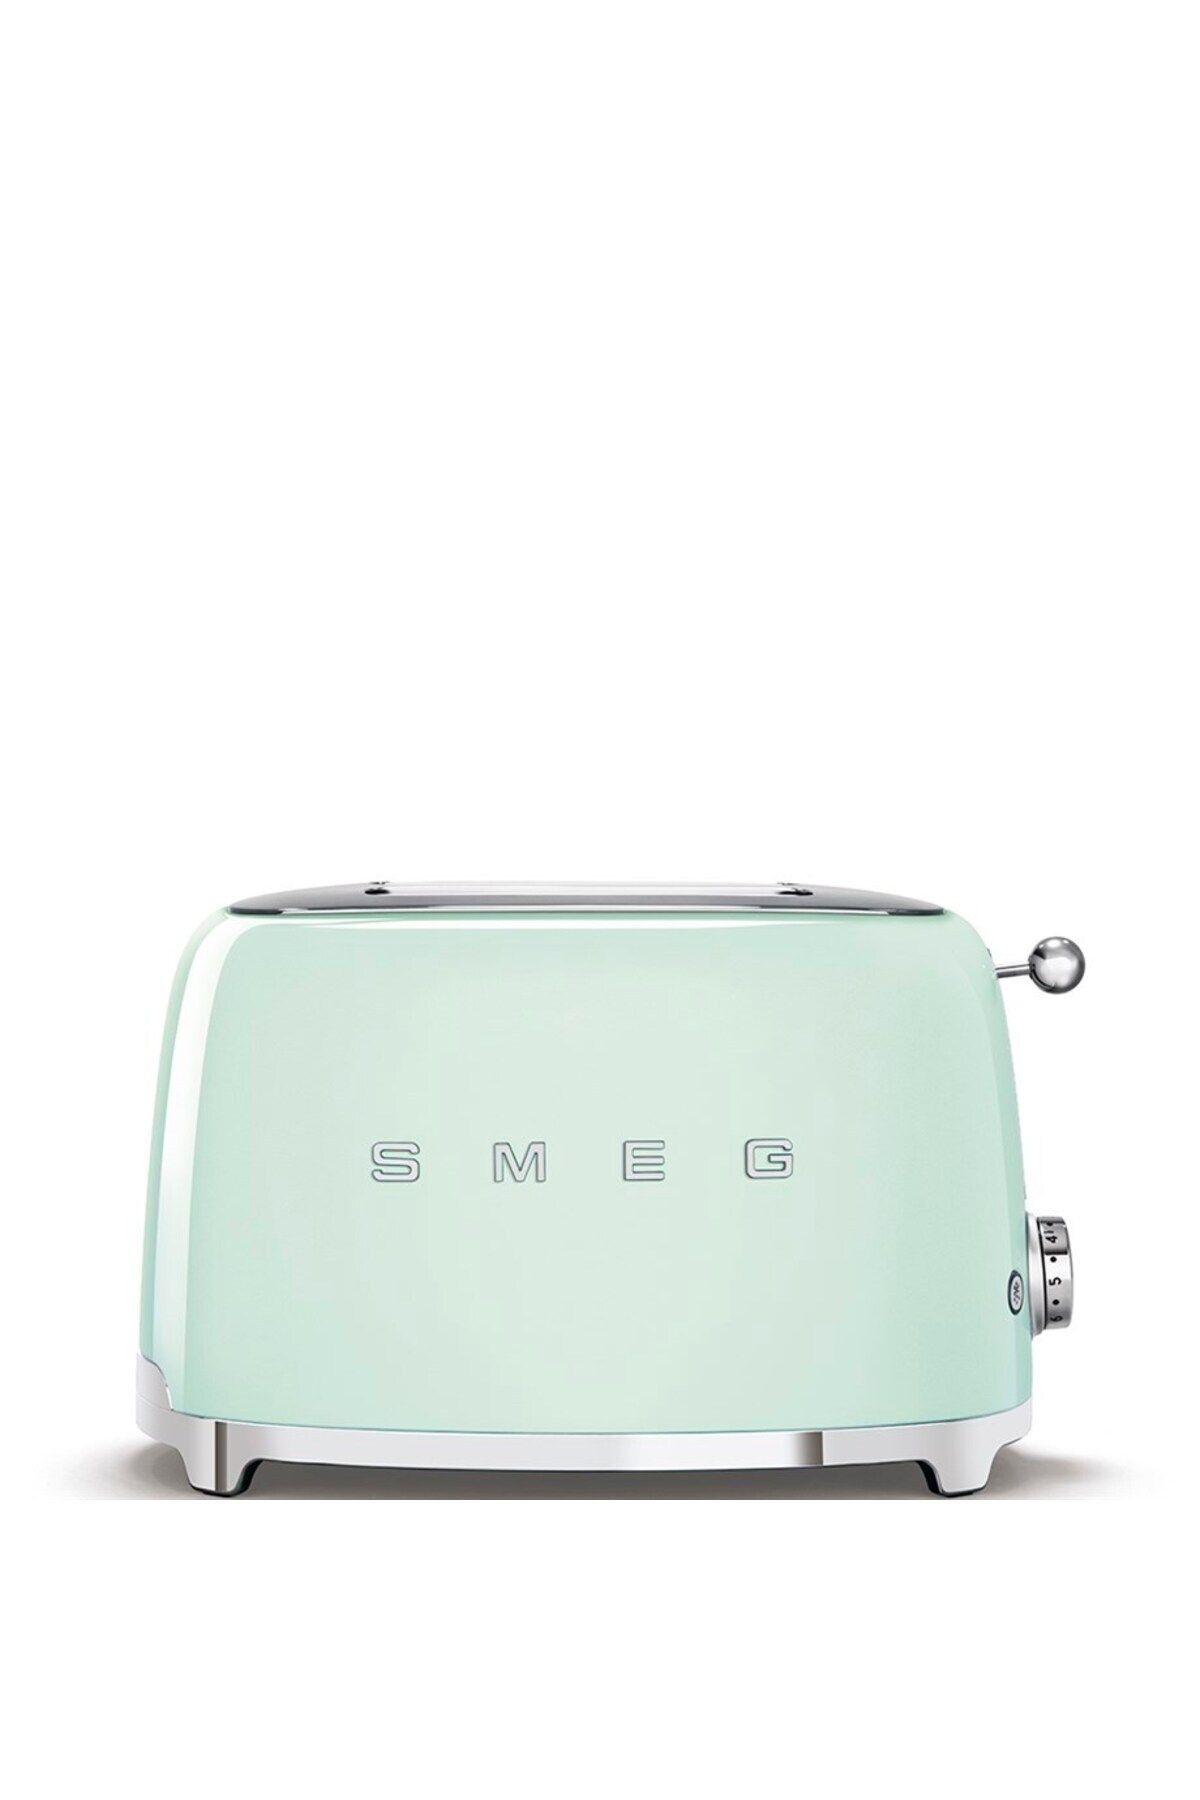 Smeg Yeşil Ekmek Kızartma Makinesi 2x1